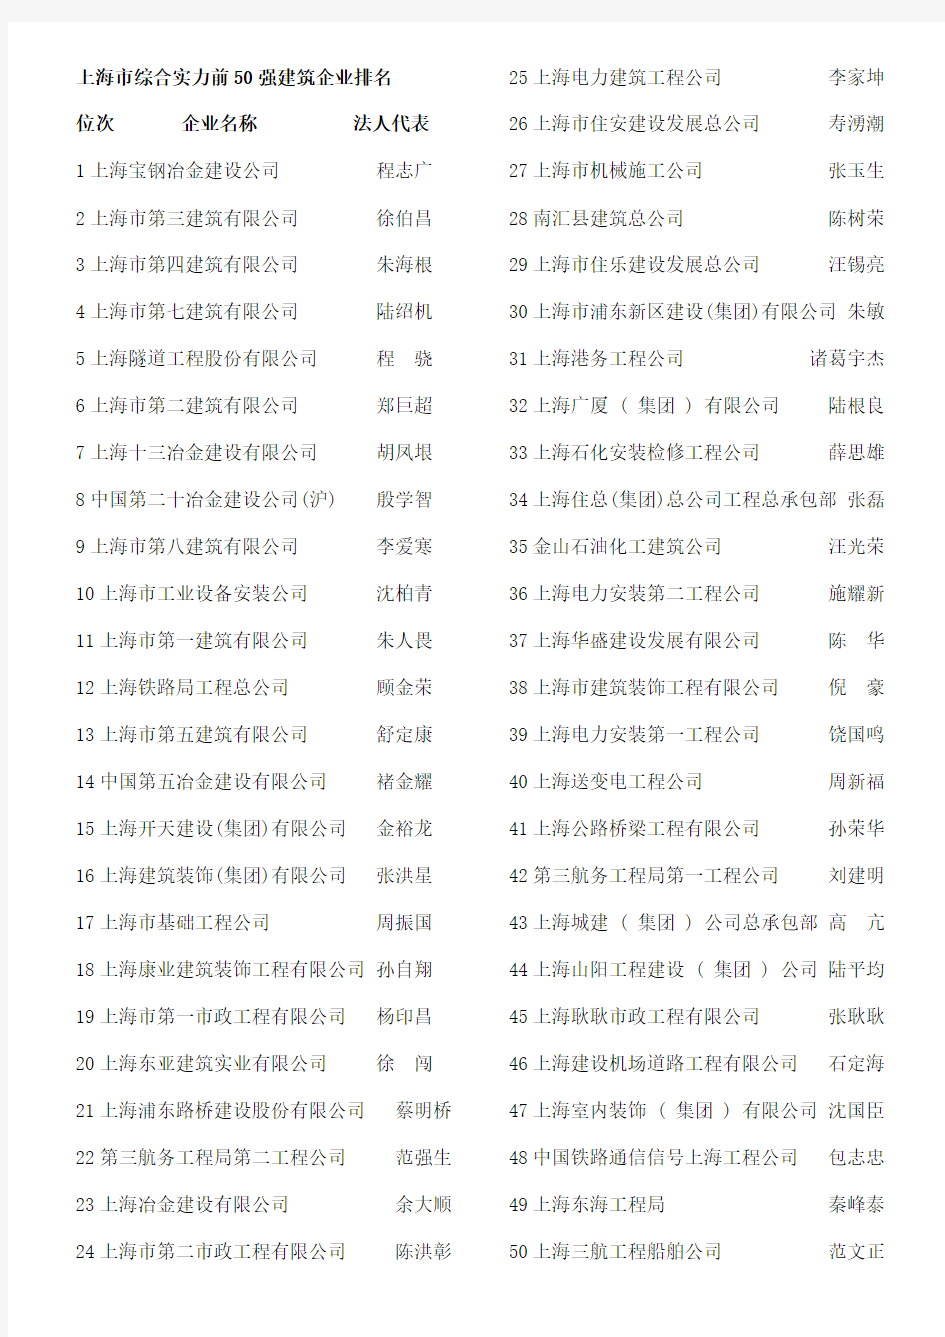 上海建筑企业50强排名